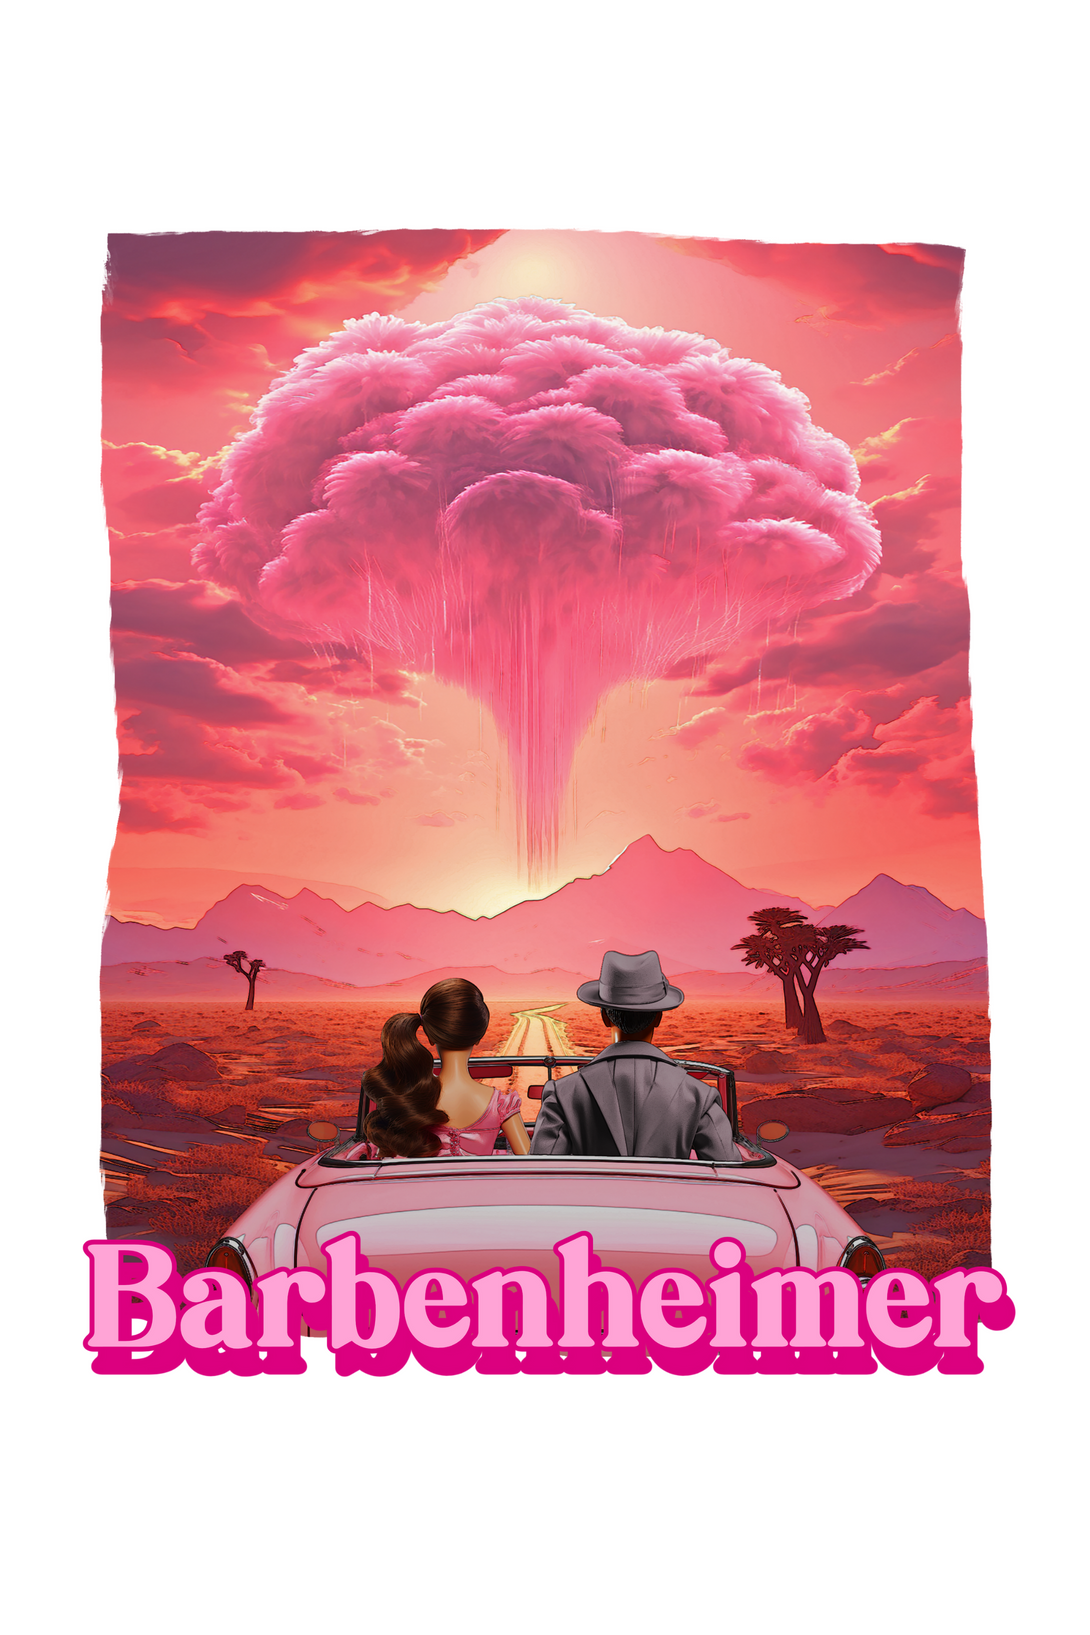 Barbienheimer Printed T-Shirt For Girl - WowWaves - 1